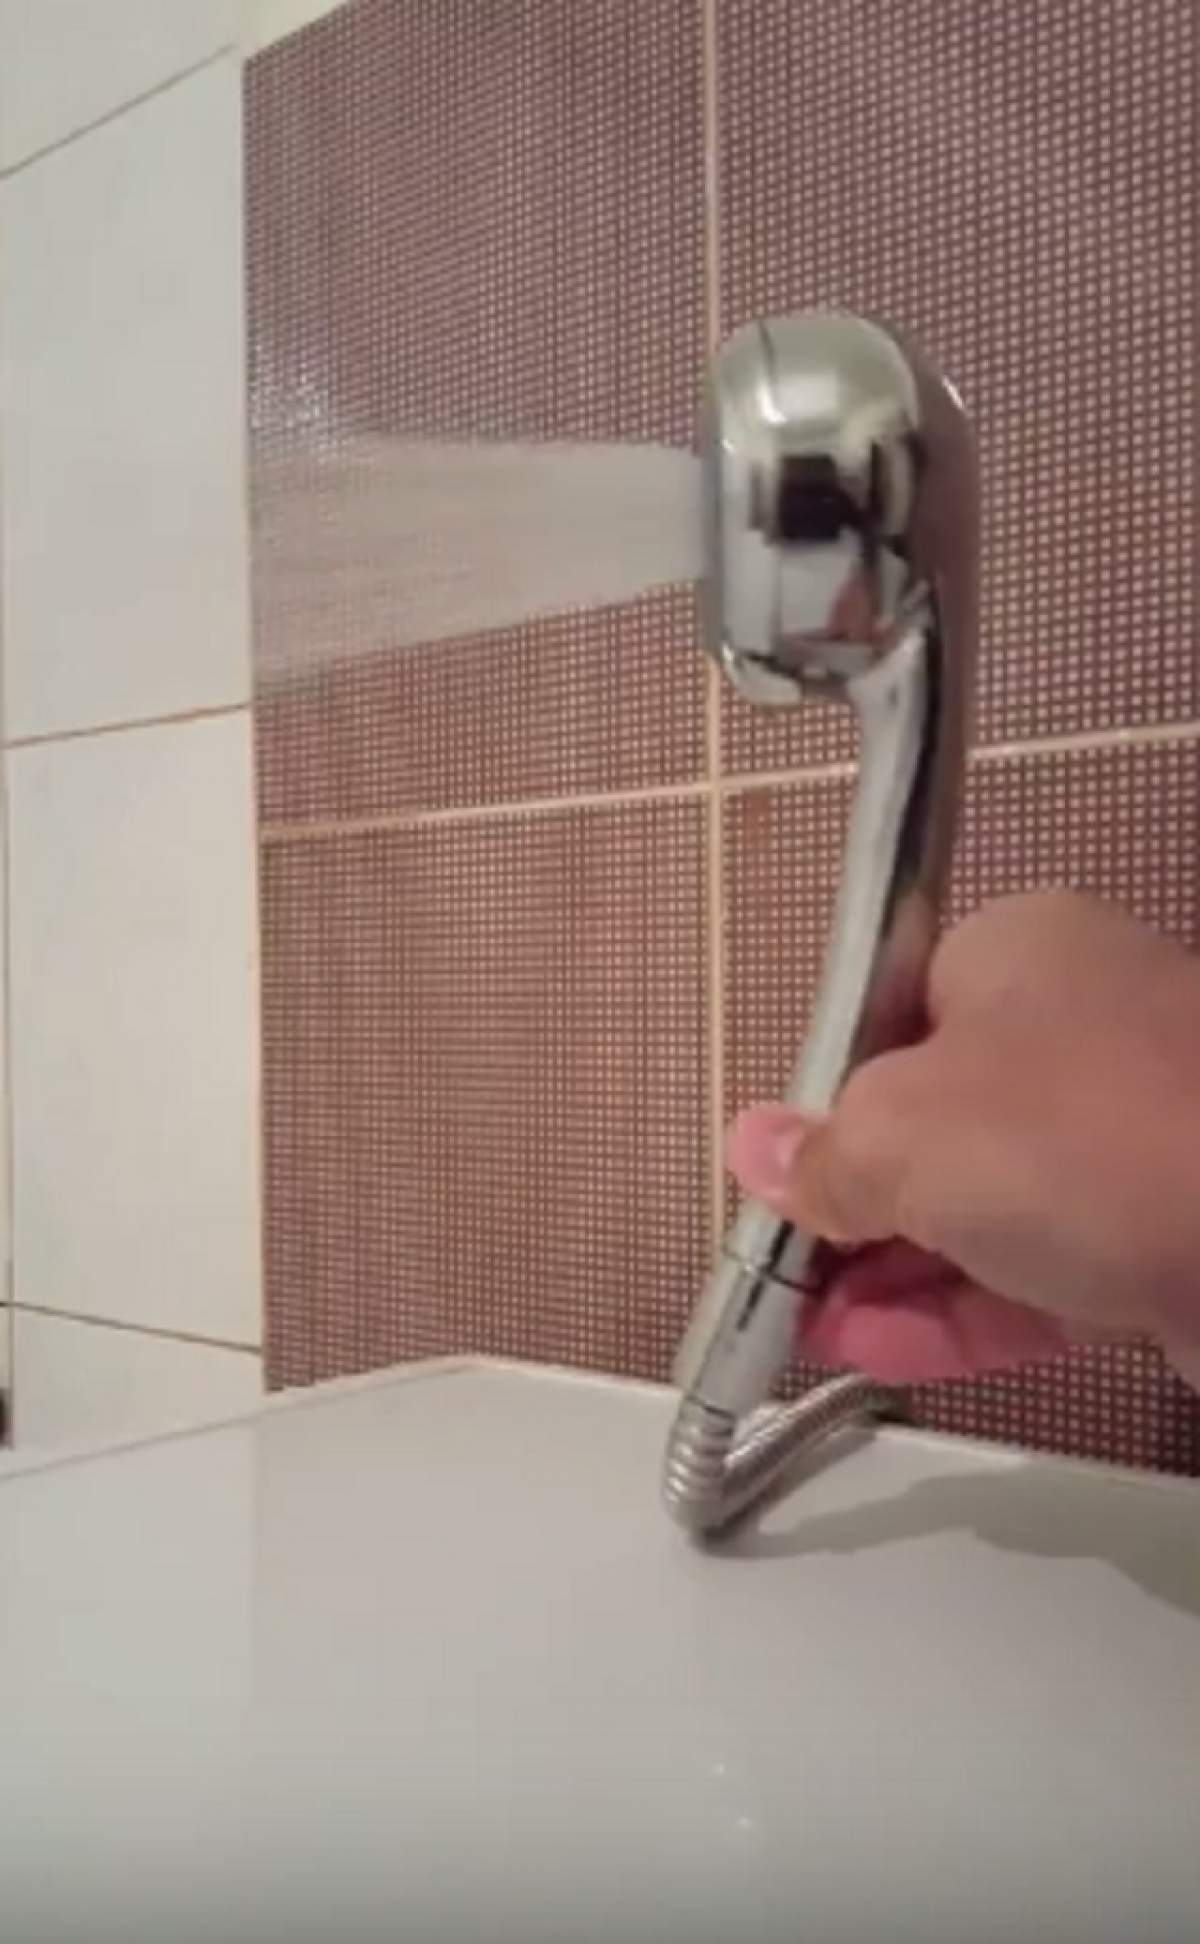 Curăţenie fără efort! Aşa poţi îndepărta calcarul depus pe capul de duş în doar câteva minute